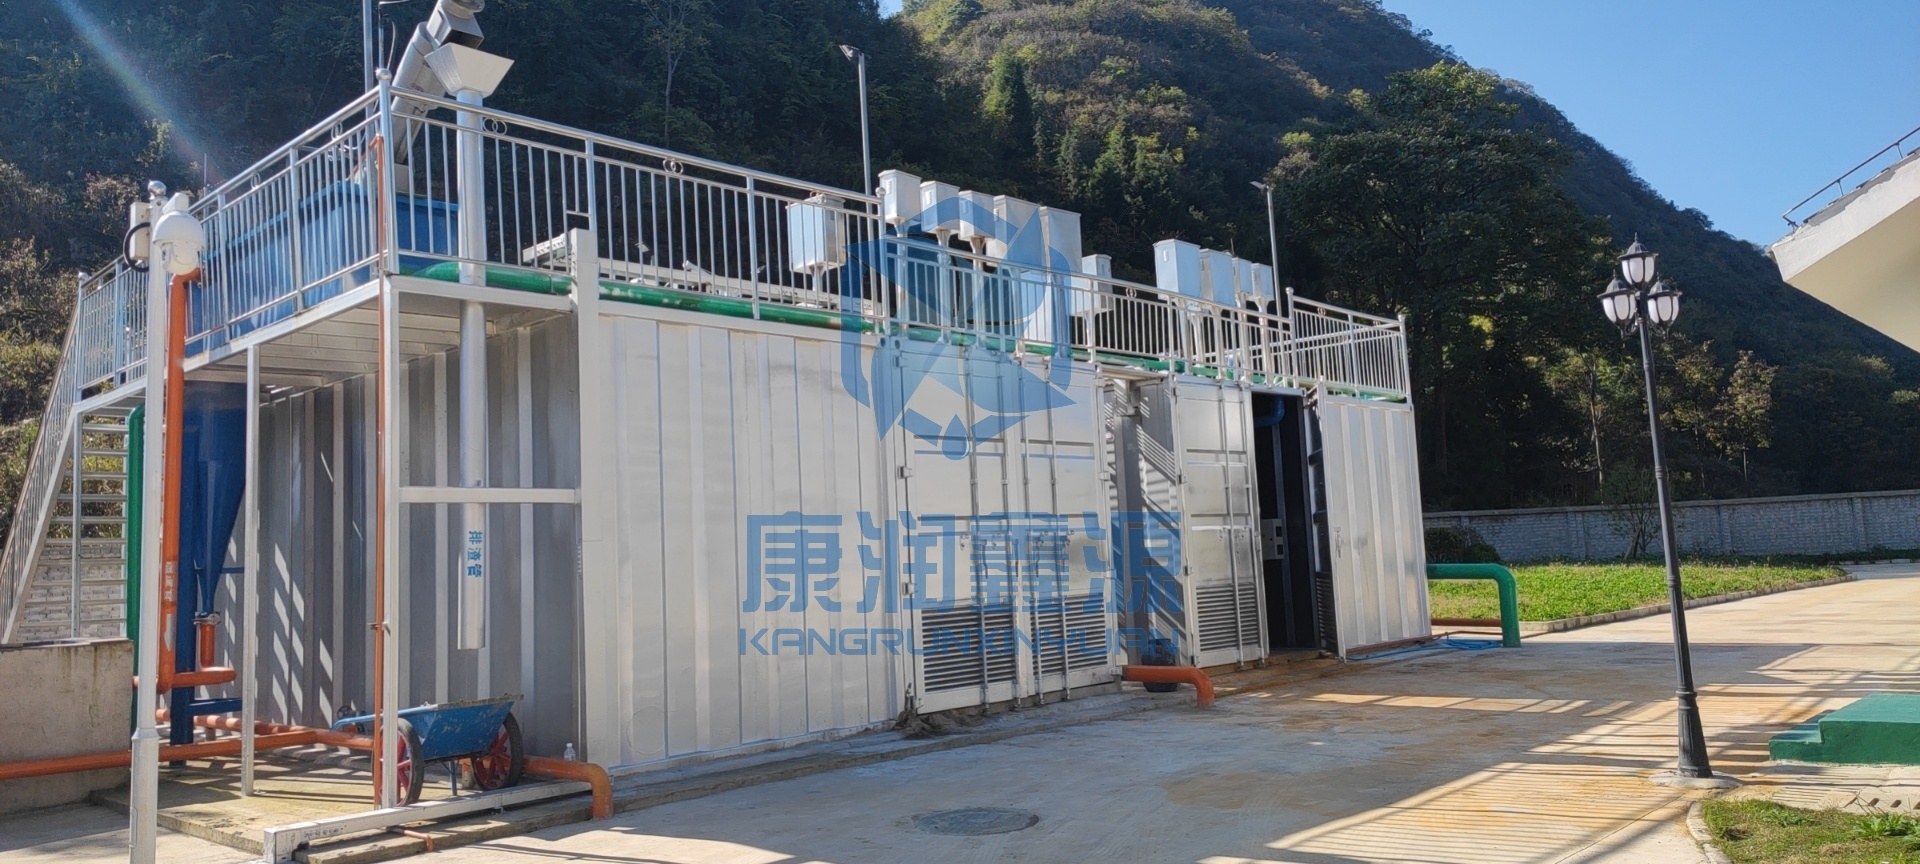 镇宁县双龙山街道办污水处理工程 设备采购及安装工程